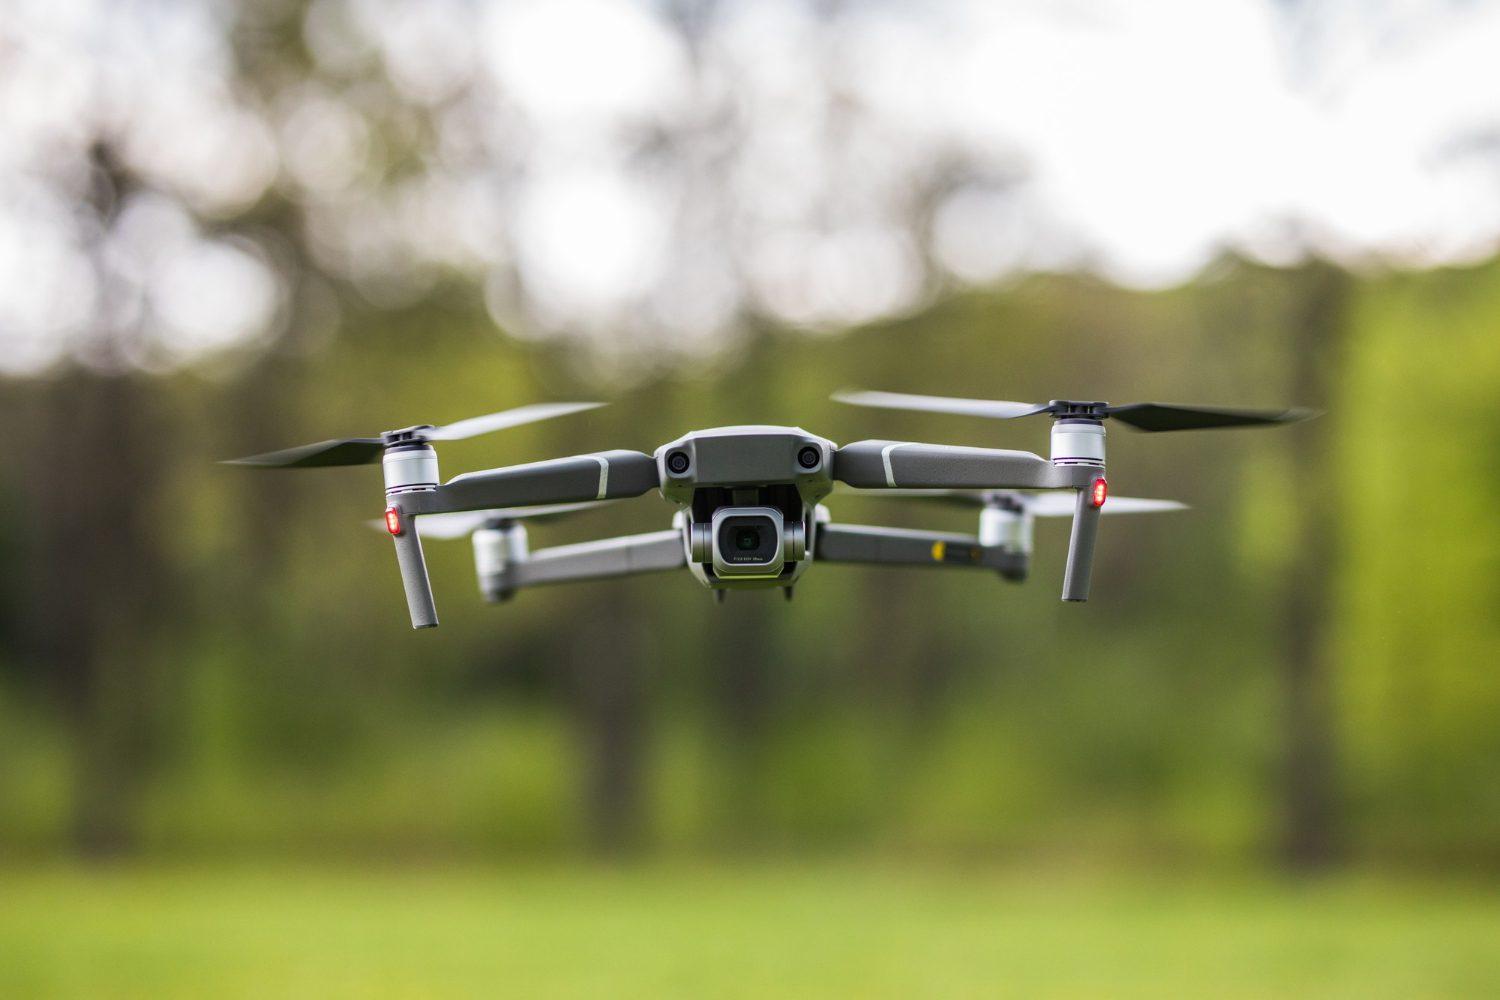 Viitorul sună bine atunci când este vorba de agricultură dronele agricole vor înlocui munca fermierilor în mare măsură